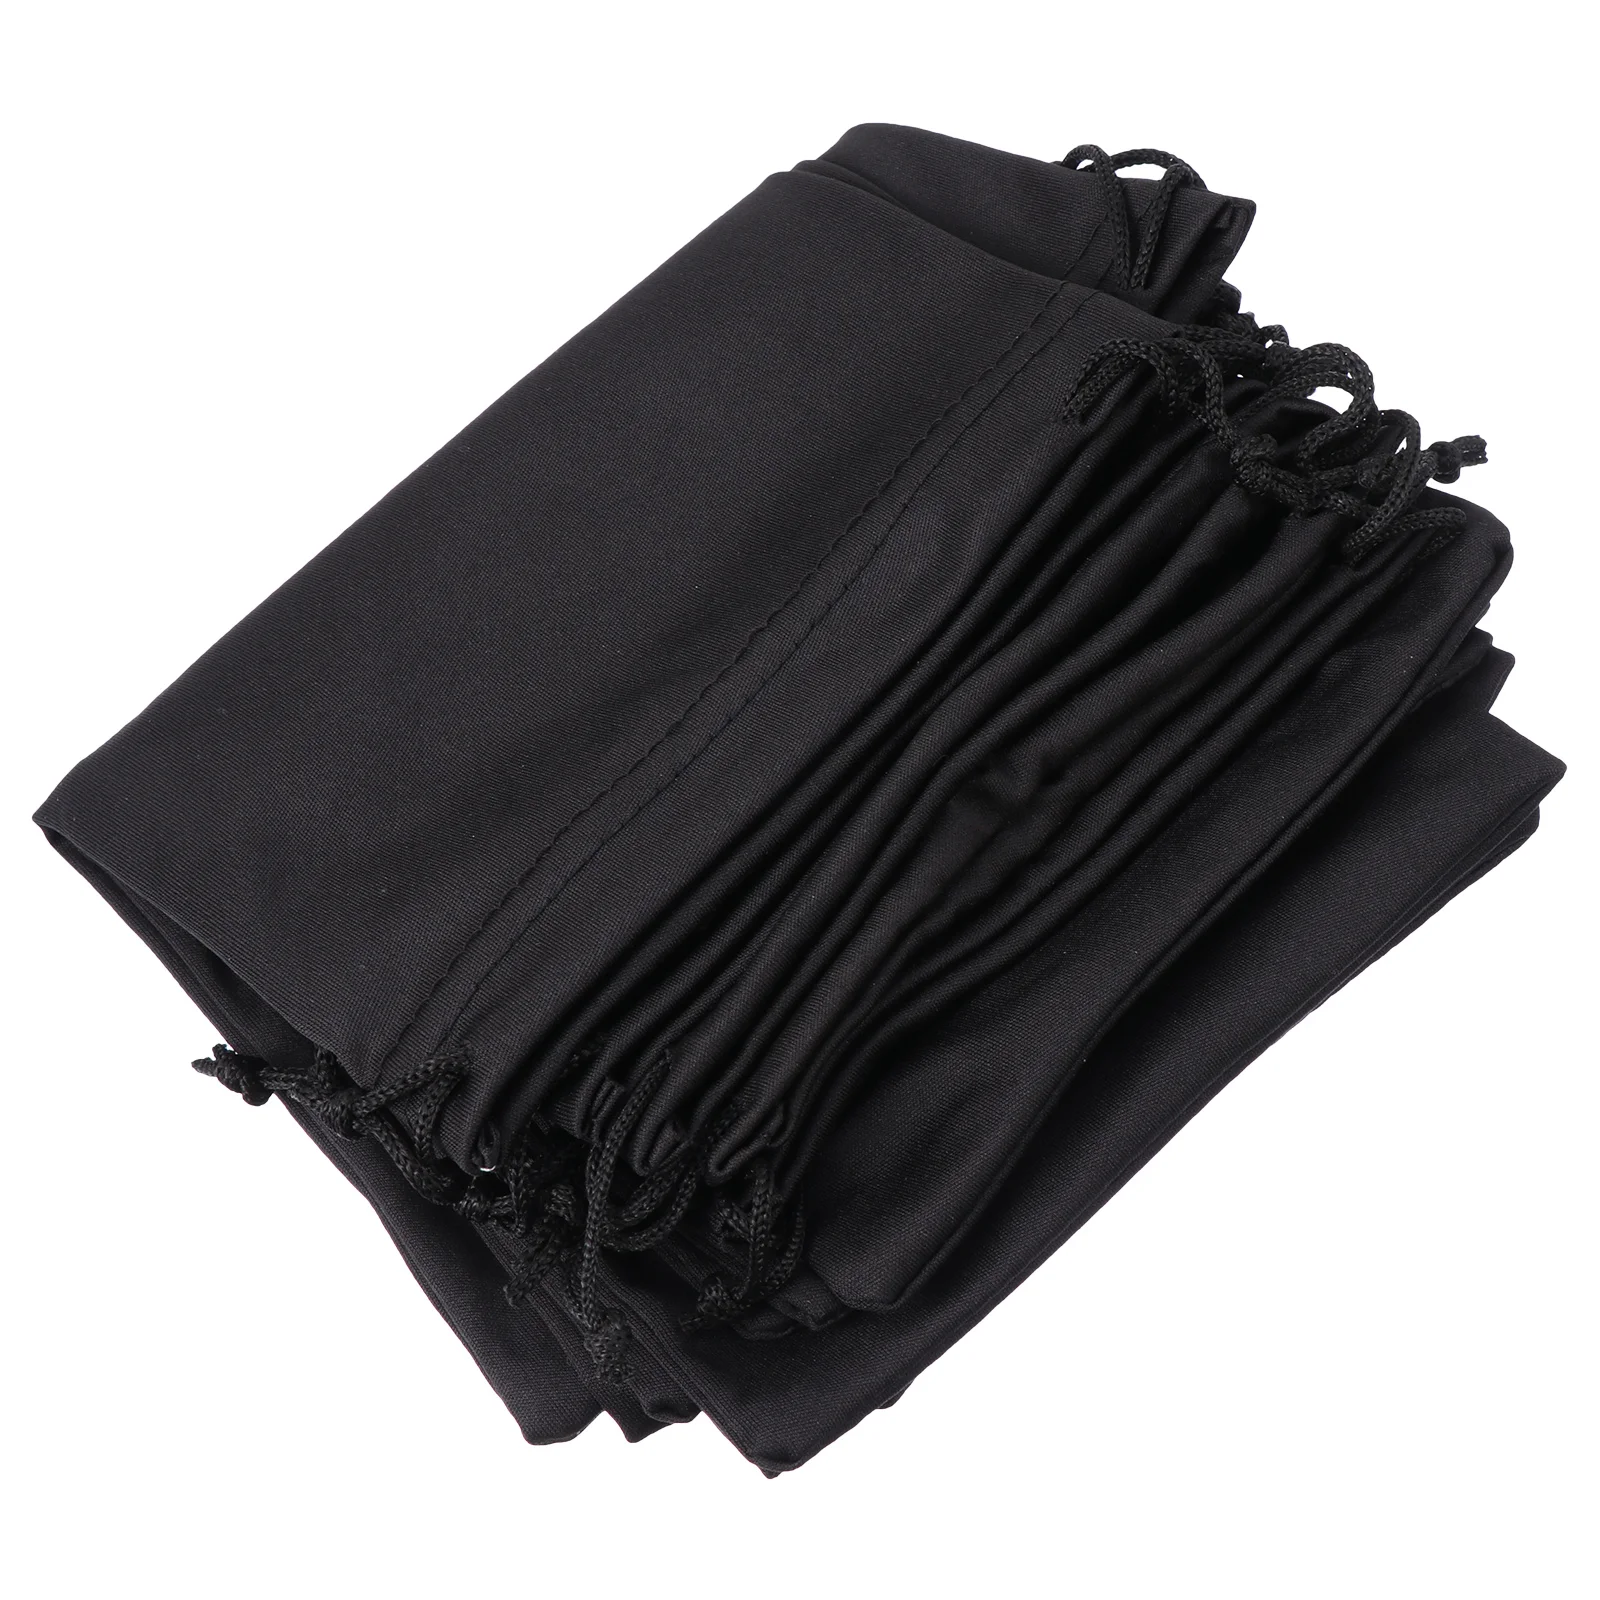 

10 лыжных сумок-защитные сумки для снега на шнурке для переноски снежных очков Солнцезащитные очки черные 25x14 см